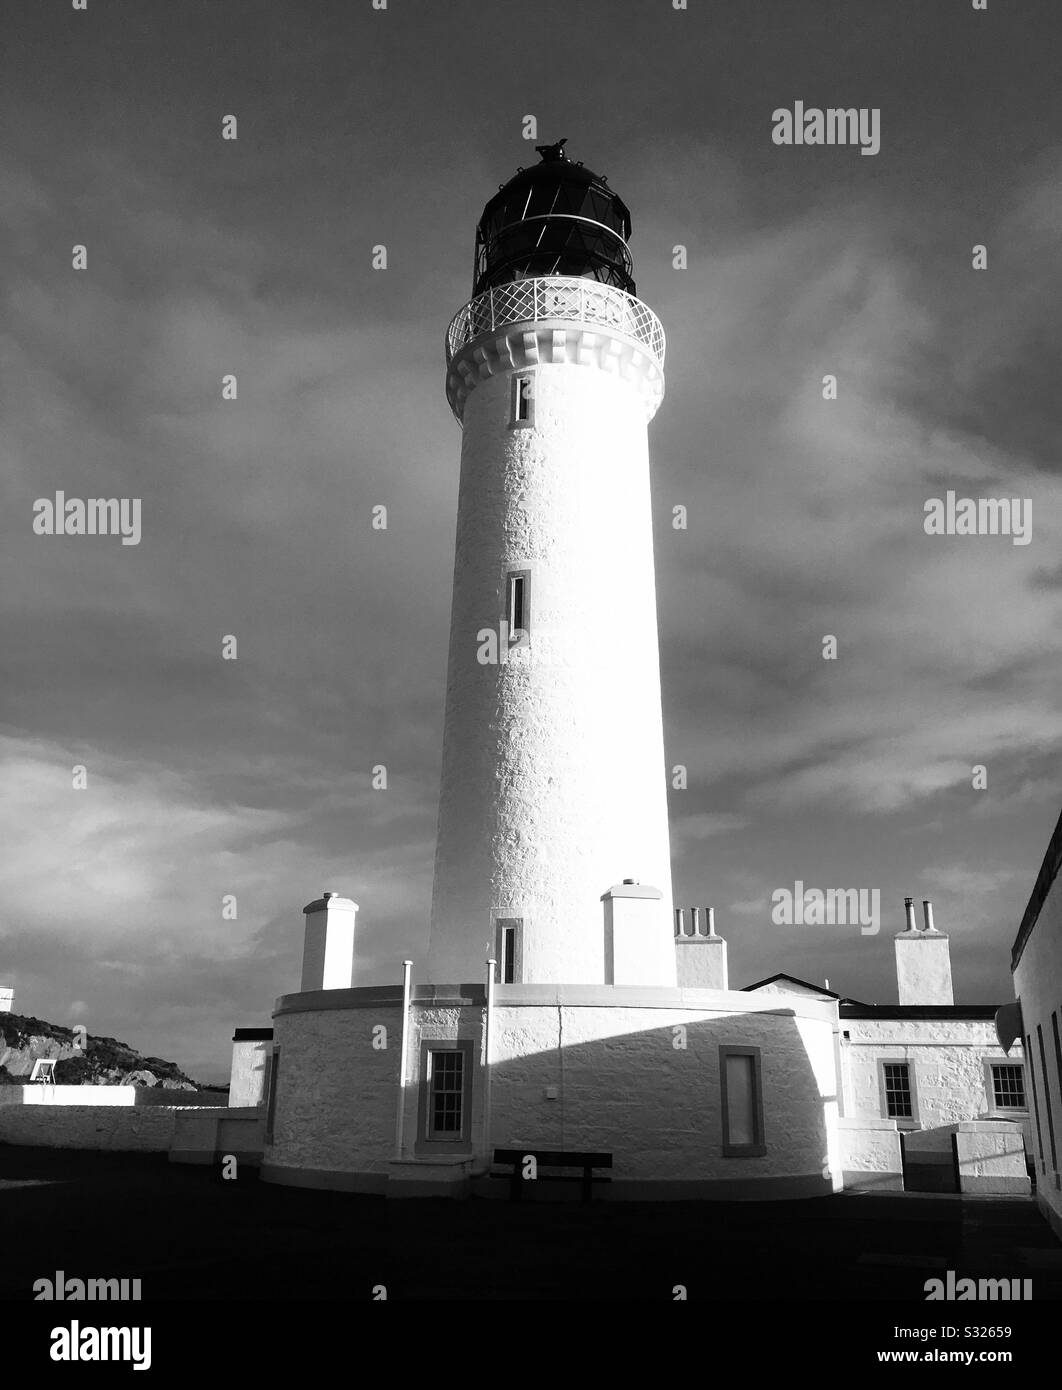 Monochrome de Mull of Galloway Lighthouse par Robert Stevenson, Drummore, Dumfries et Galloway, Écosse Banque D'Images